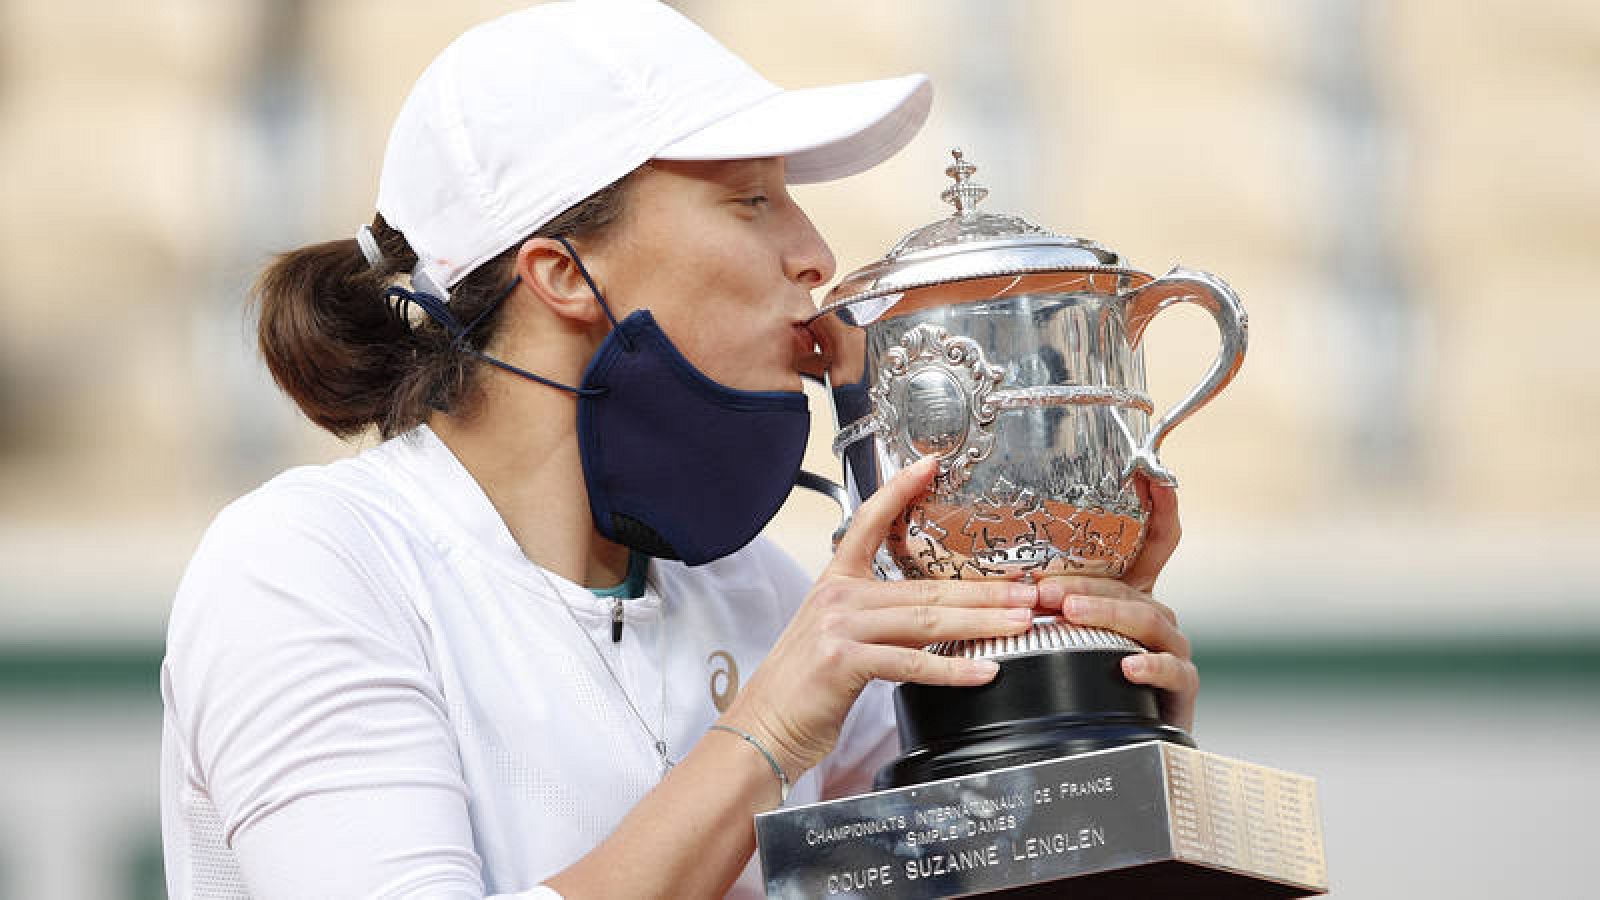 La polaca Iga Swiatek besa con la mascarilla bajada el trofeo de Roland Garros 2020.